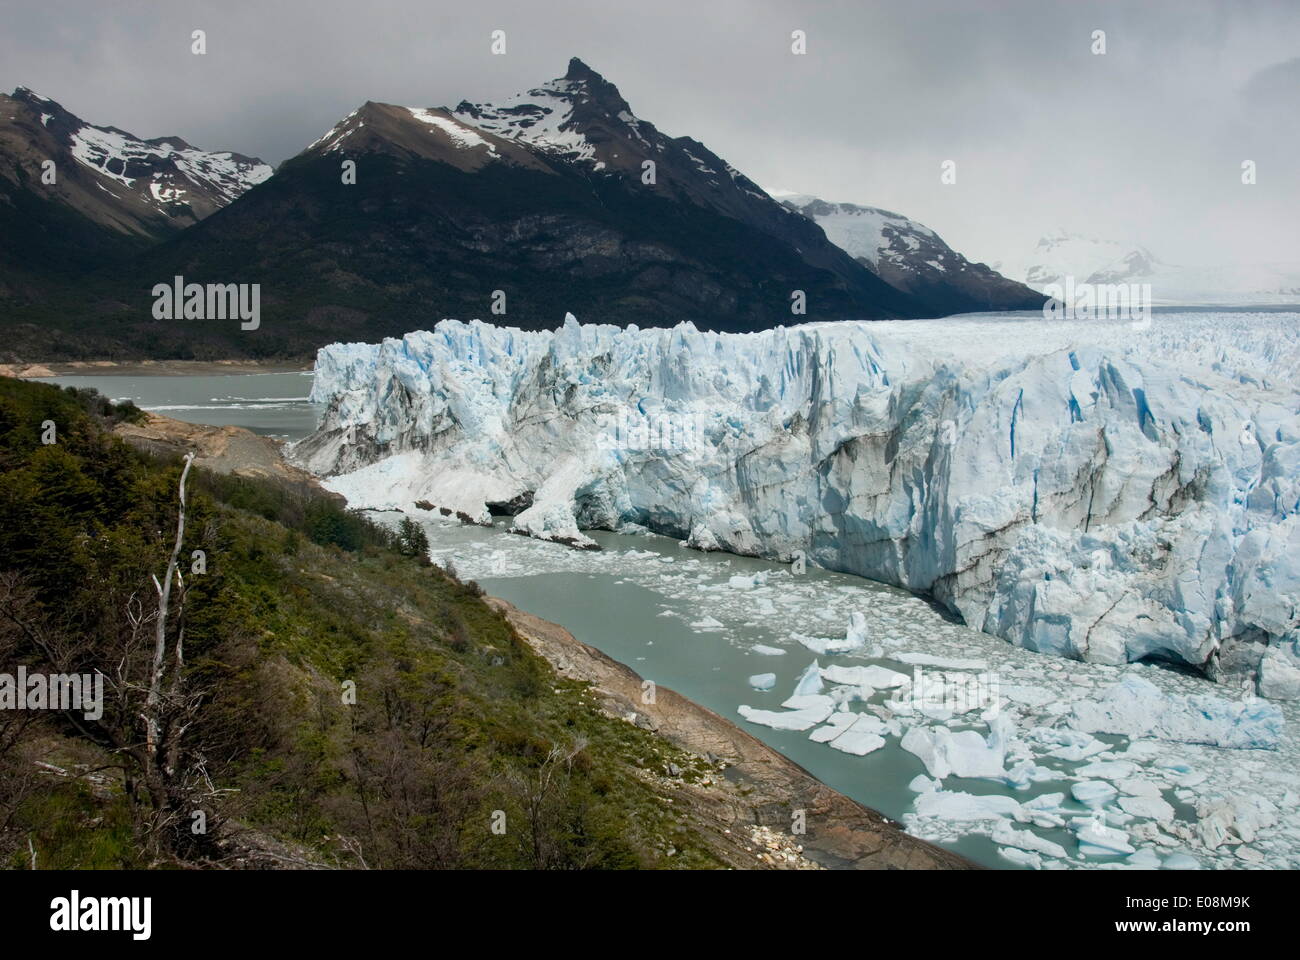 Glaciar Perito Moreno (Perito Moreno Glacier), Lago Argentino, Los Glaciares National Park, UNESCO World Heritage Site, Patagonia, Argentina, South America Stock Photo